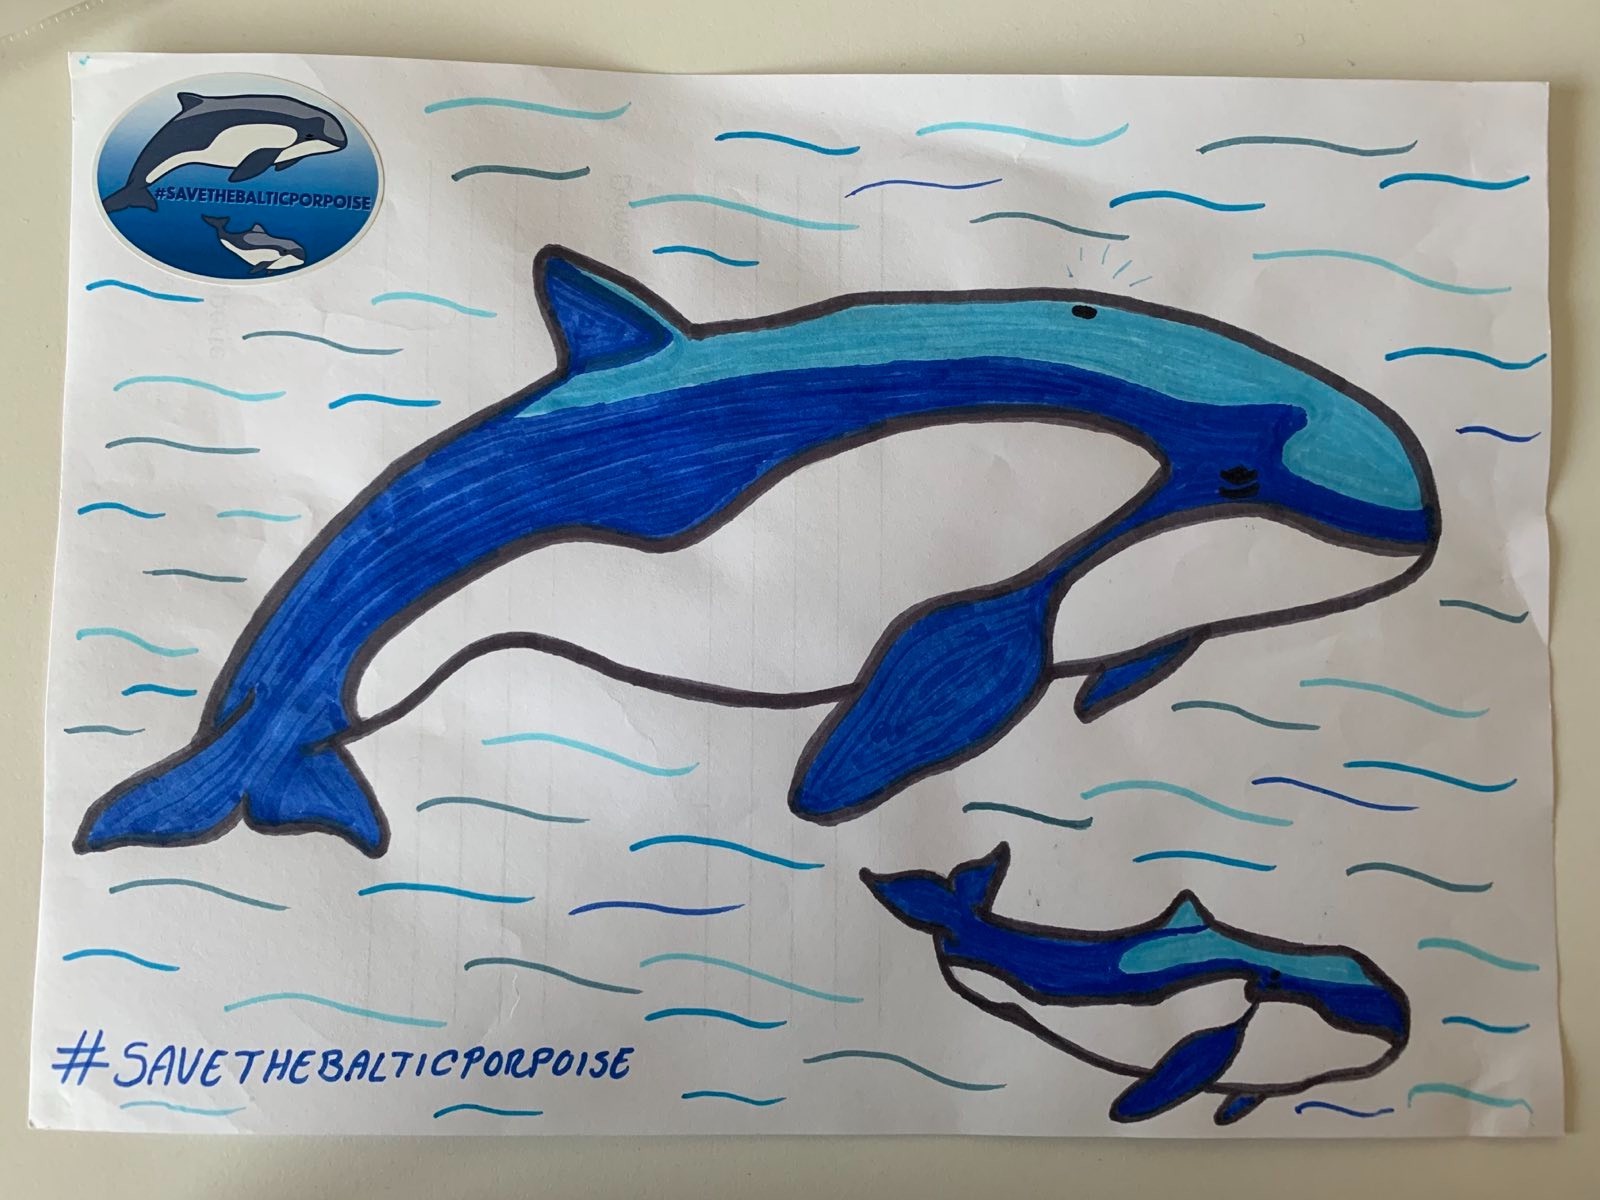 Disegno di una focena adulta e un cucciolo di balena con l'hashtag #SaveTheBalticPorpoise hashtag